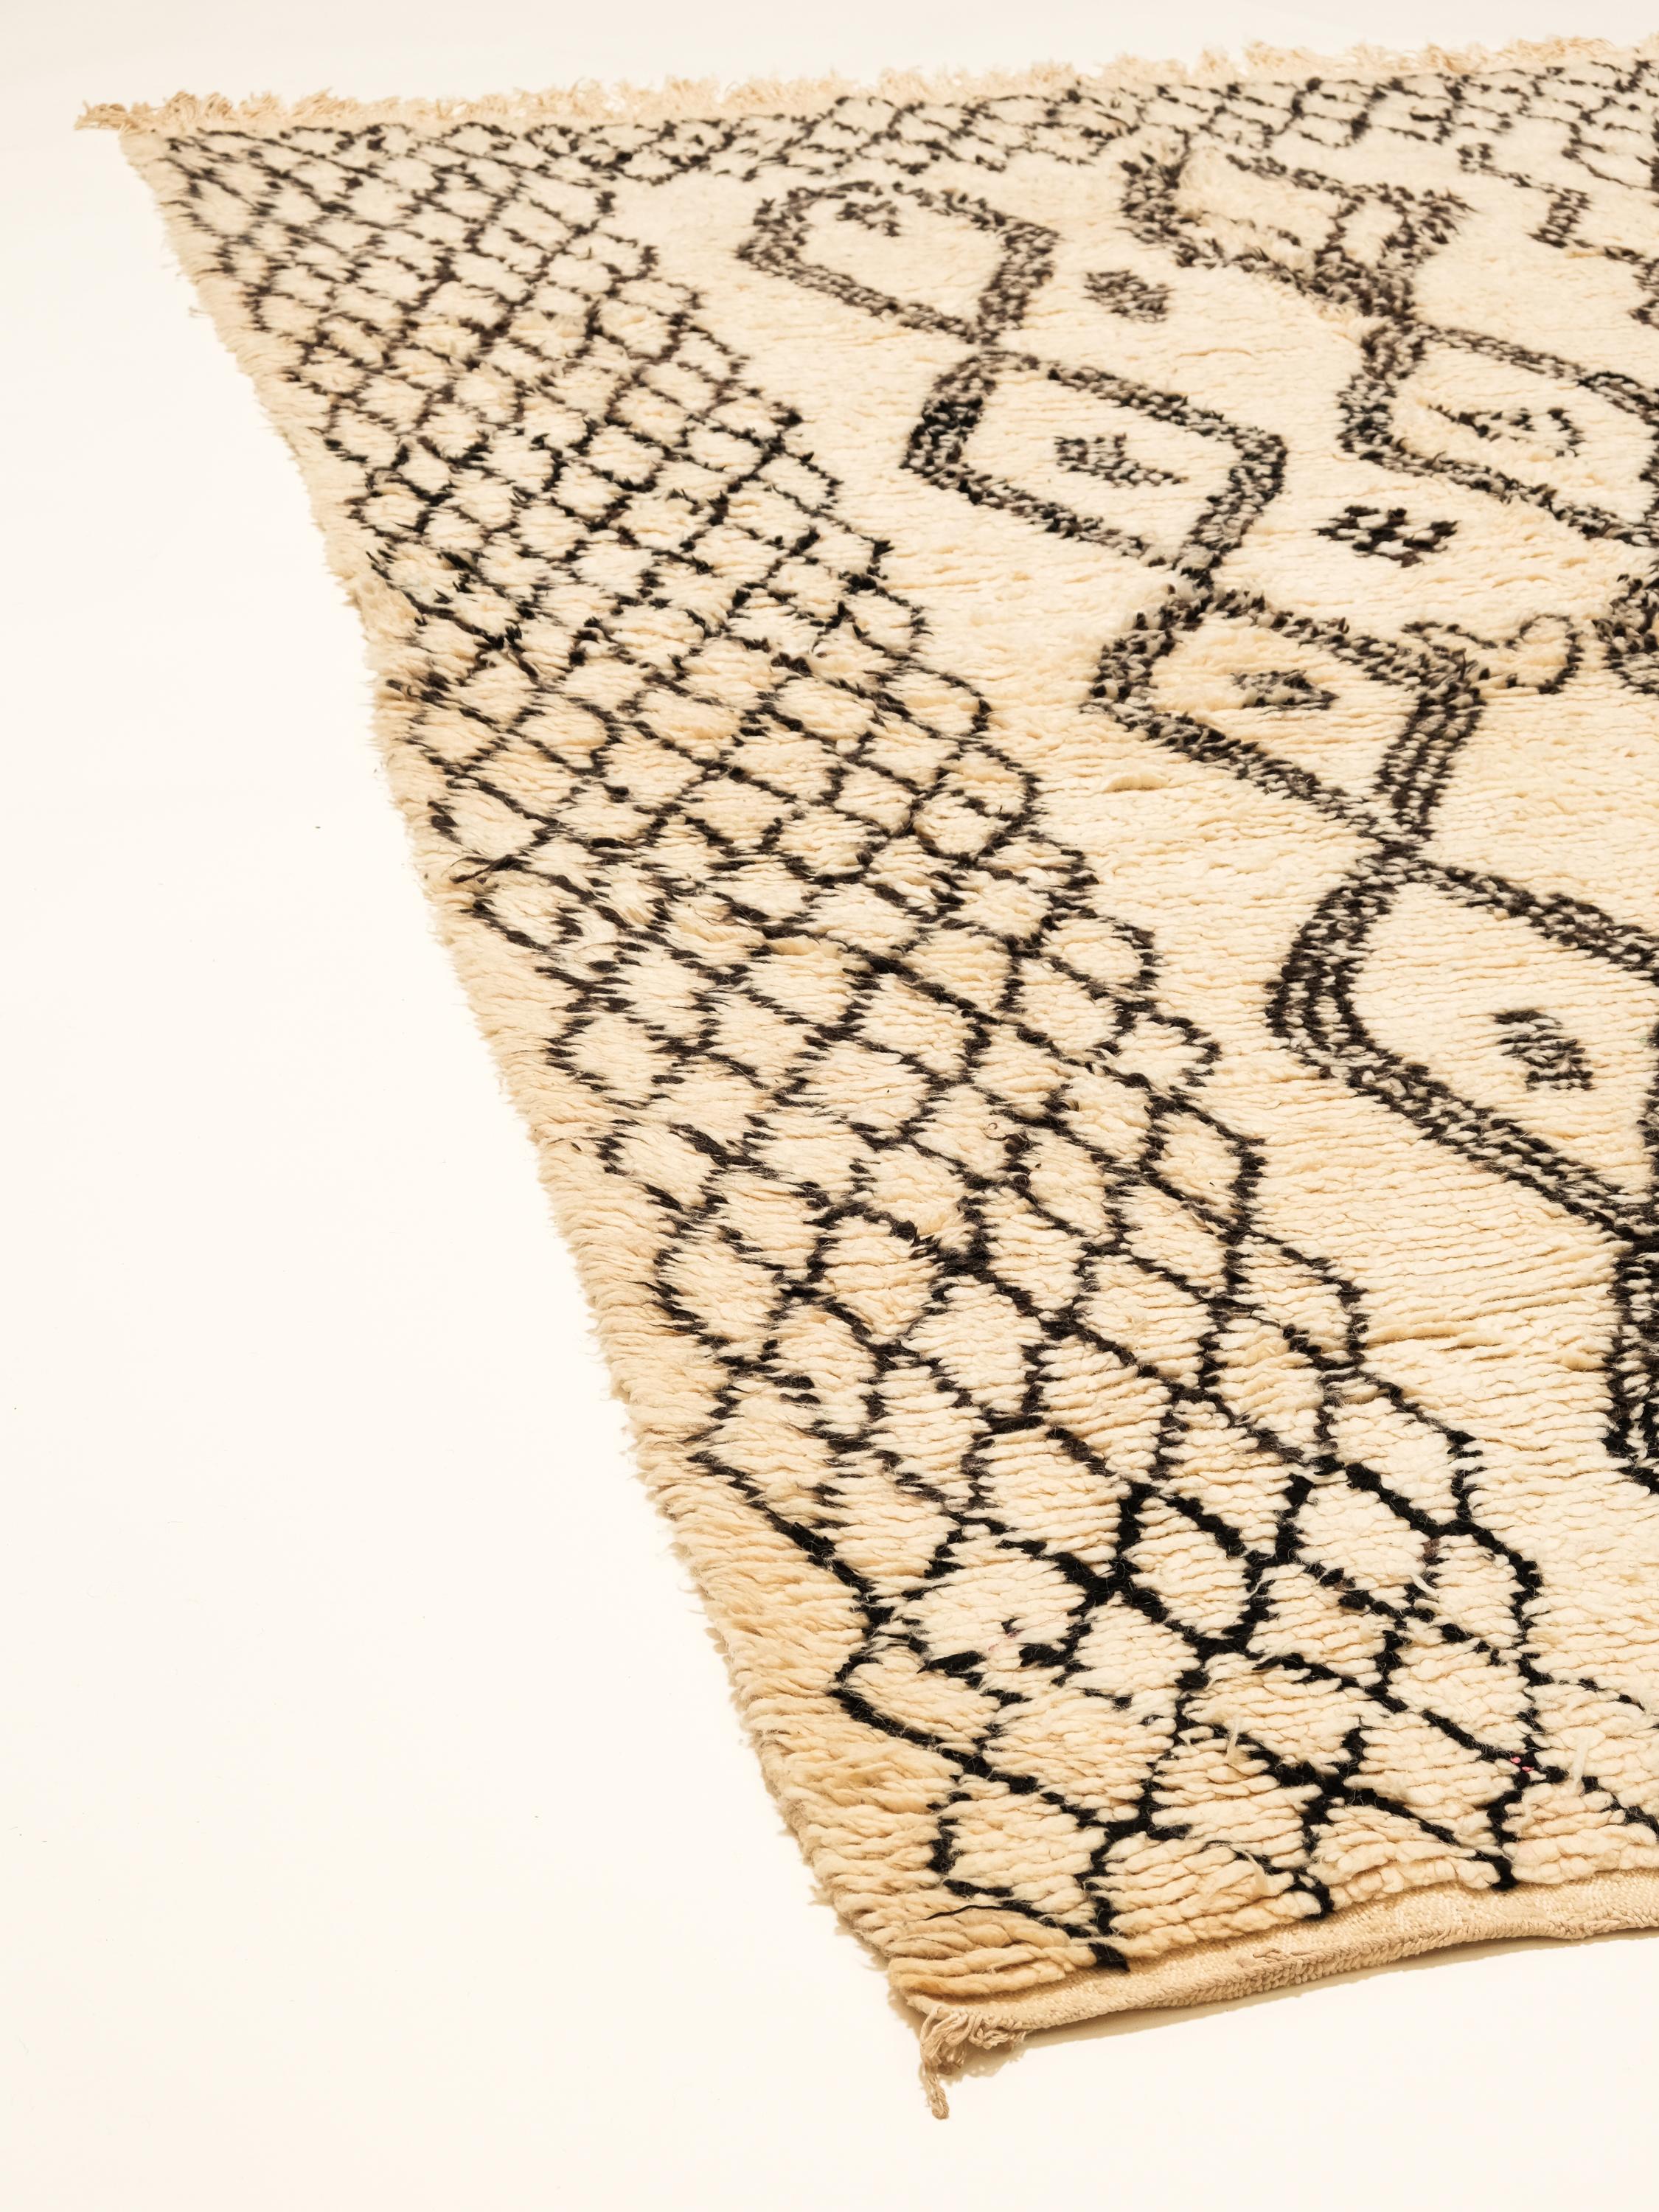 Un magnifique tapis marocain vintage de la tribu des Beni Ourain. Cette charmante pièce de laine tissée à la main présente la parfaite couleur ivoire sable et contient des motifs traditionnels de diamants en treillis sur l'ensemble du champ dans une